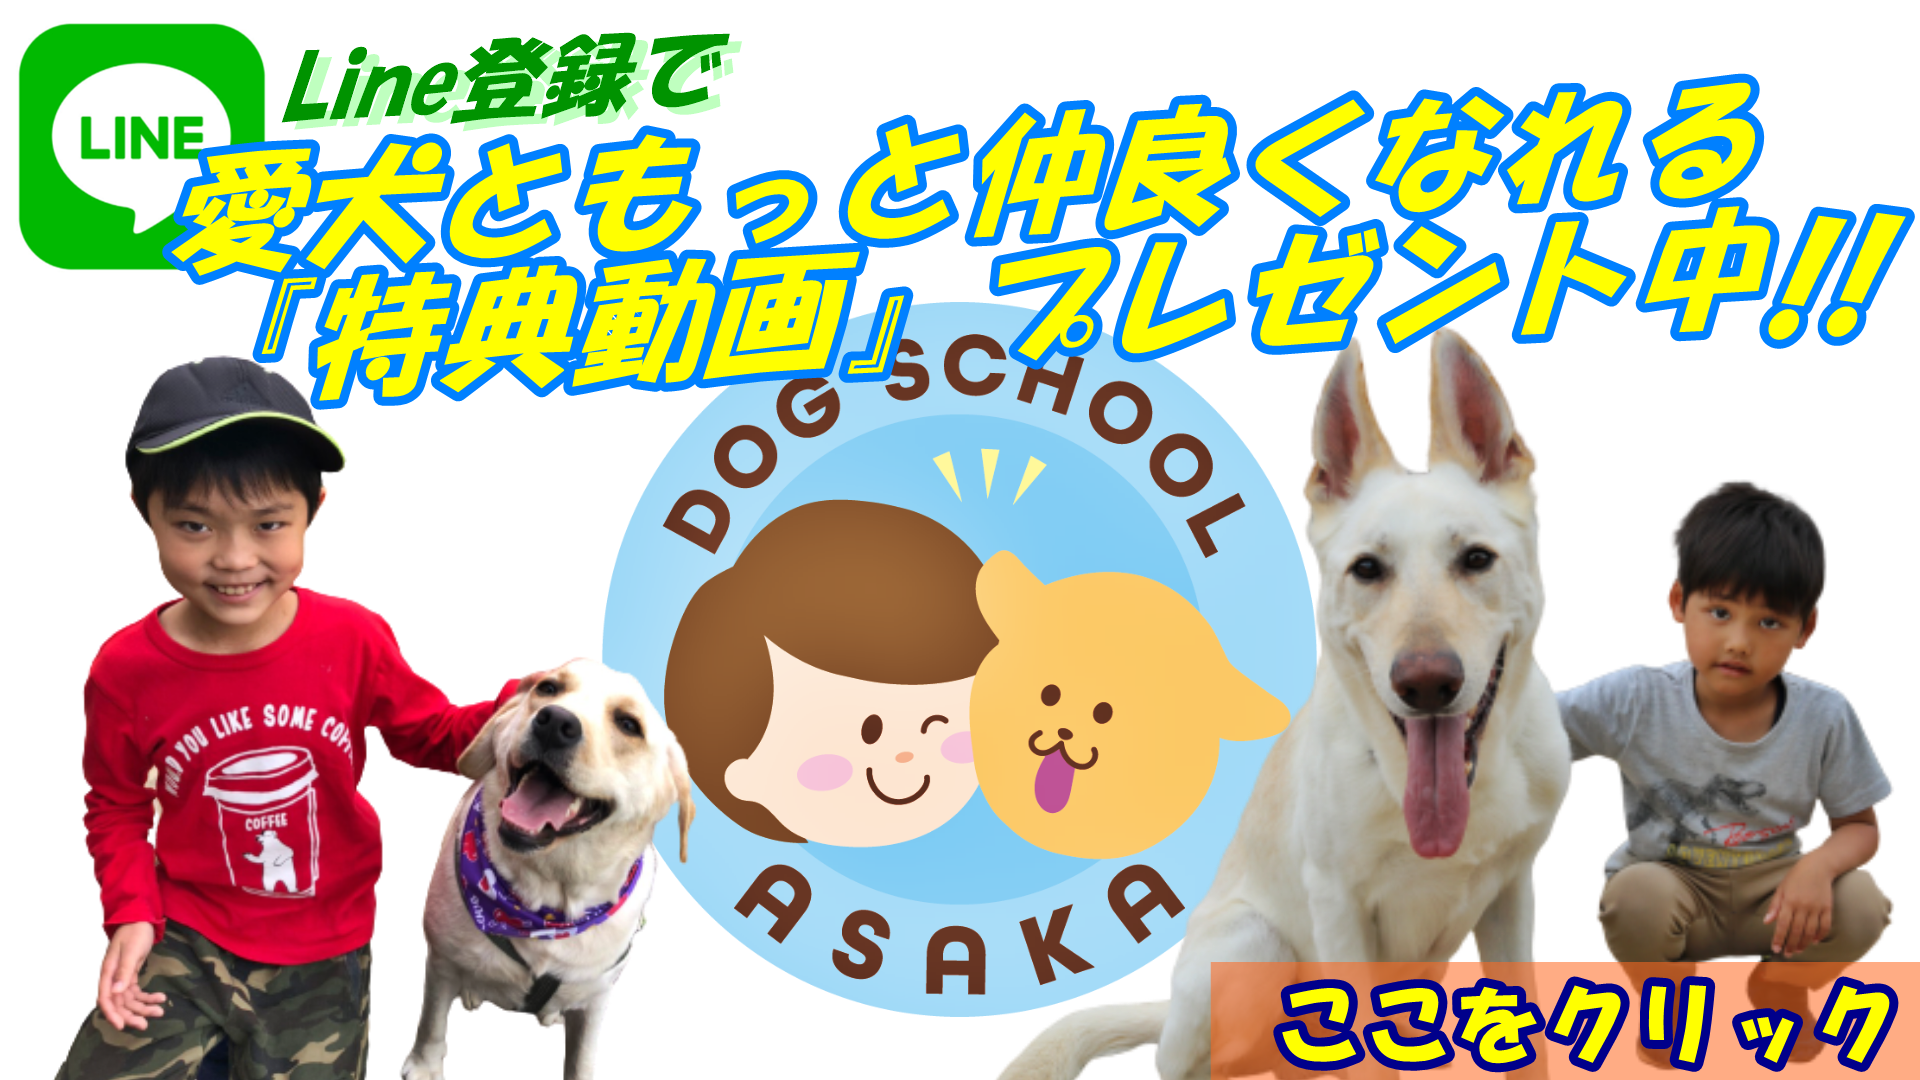 大阪 堺で充実したドッグライフを送るために、20年の実績のあるトレーナーがいるドッグトレーニングスクール『いぬの学校あさか』にご相談を。